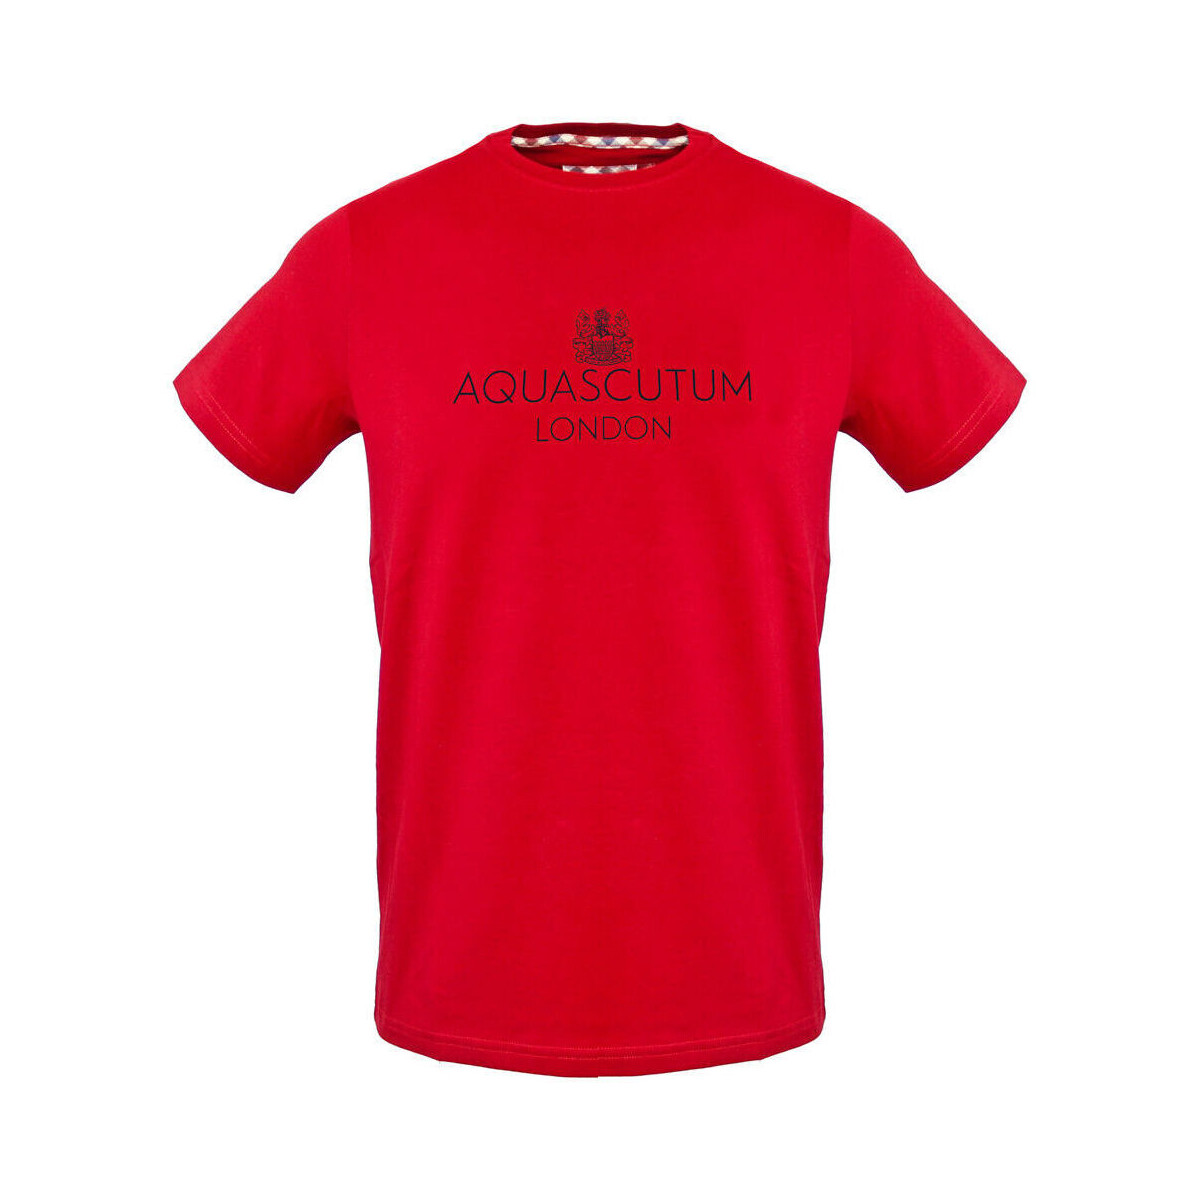 Textil Muži Trička s krátkým rukávem Aquascutum - tsia126 Červená